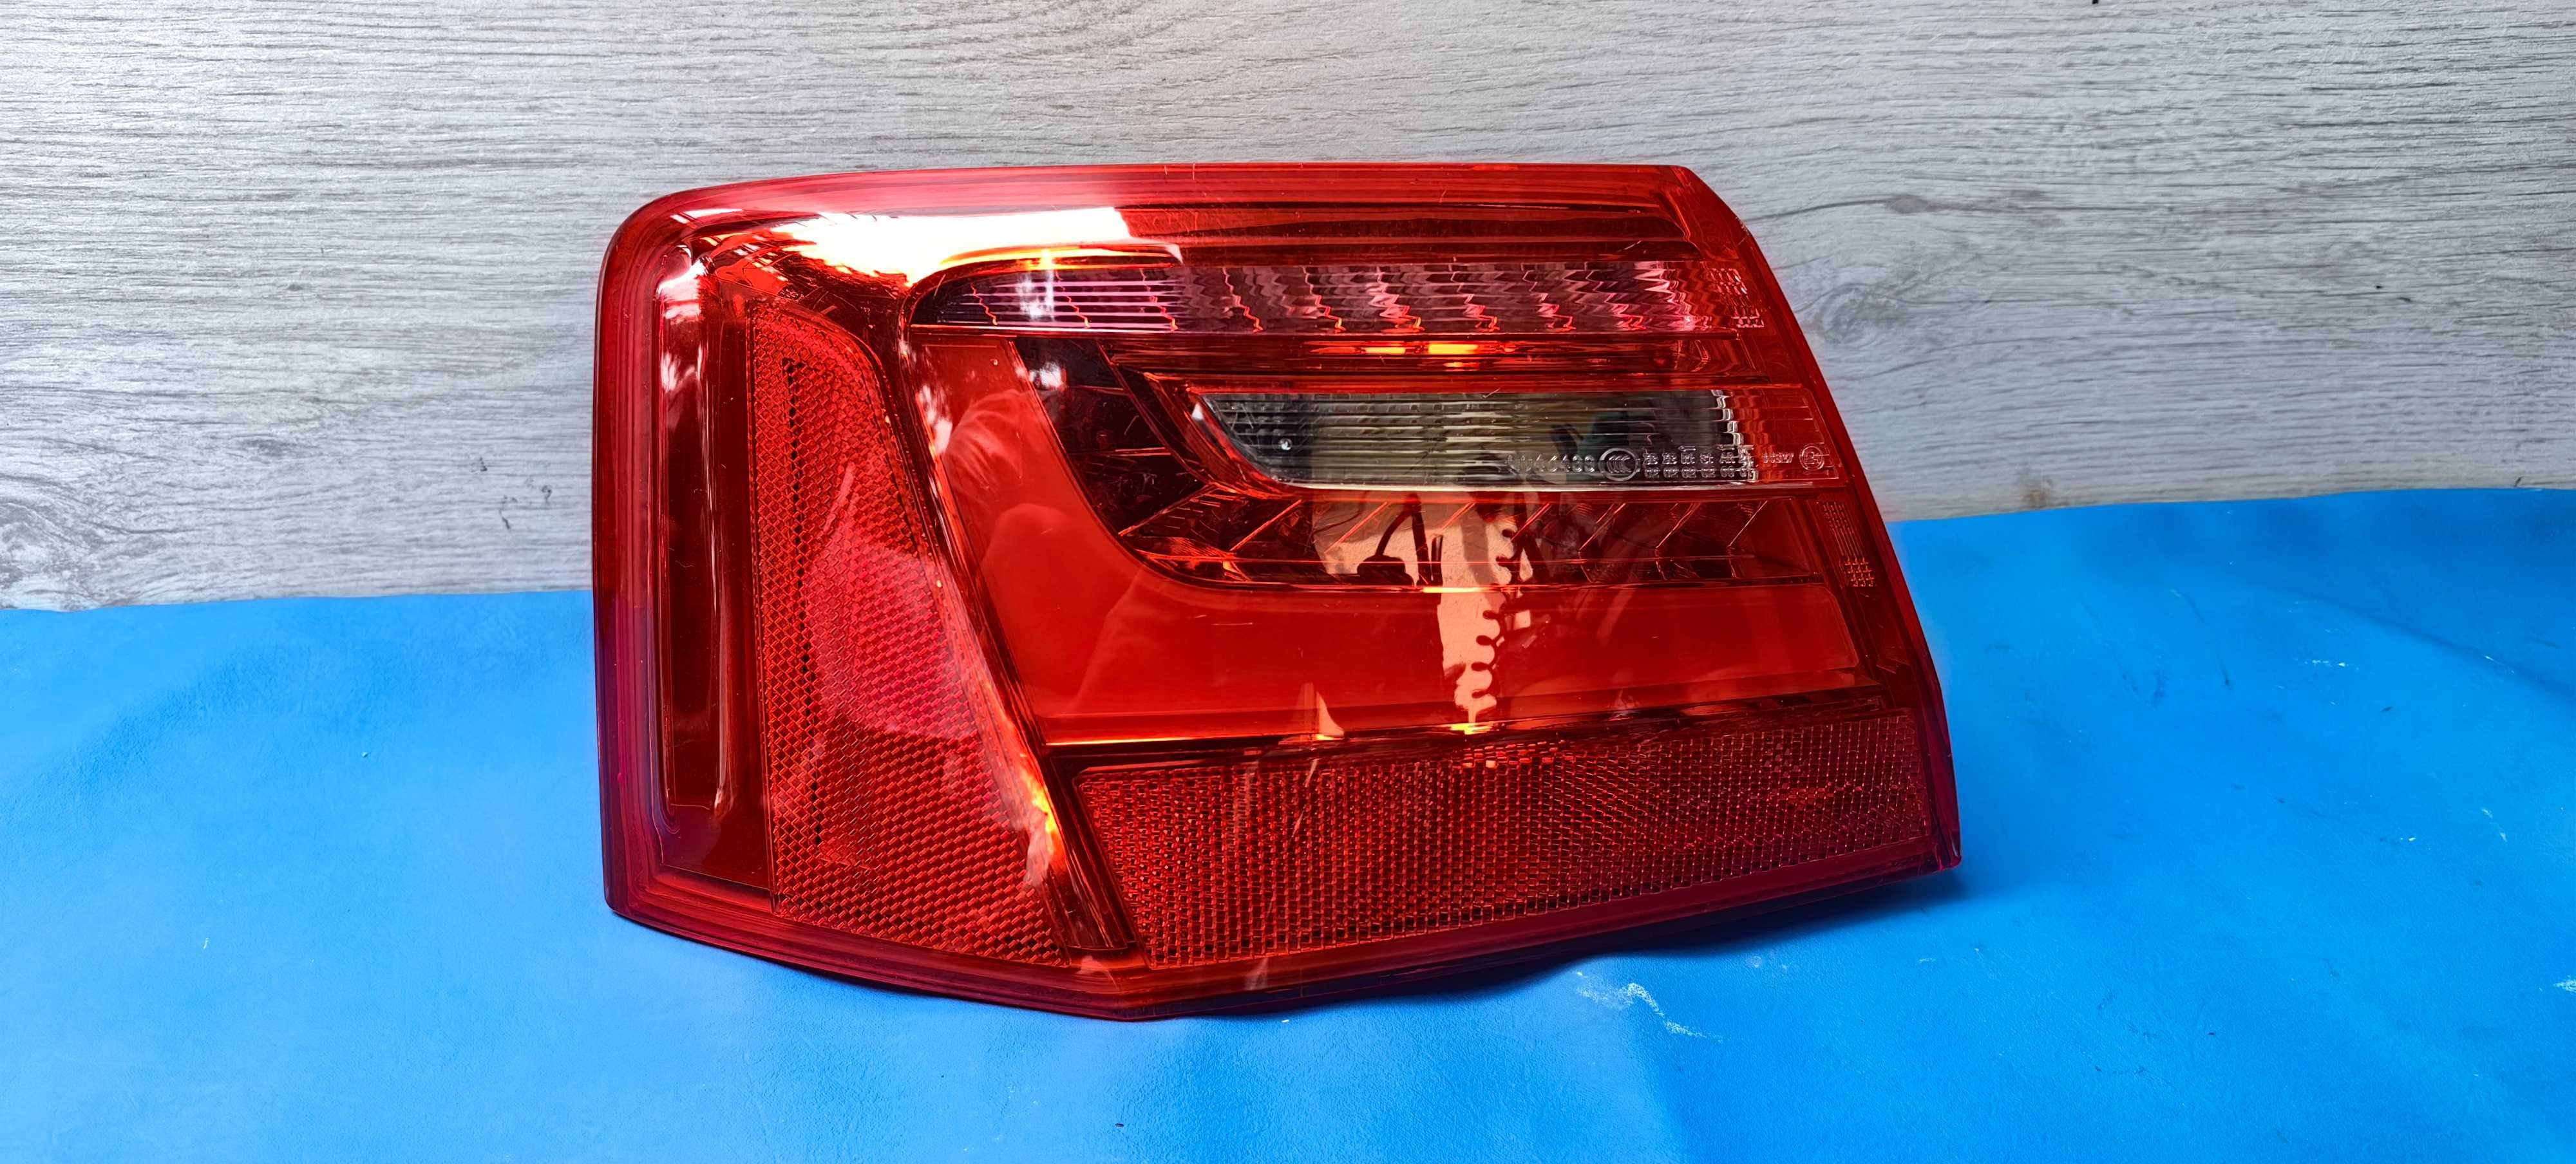 Ляв стоп за Audi A6 C7 LED / Ауди А6 Ц7 ЛЕД